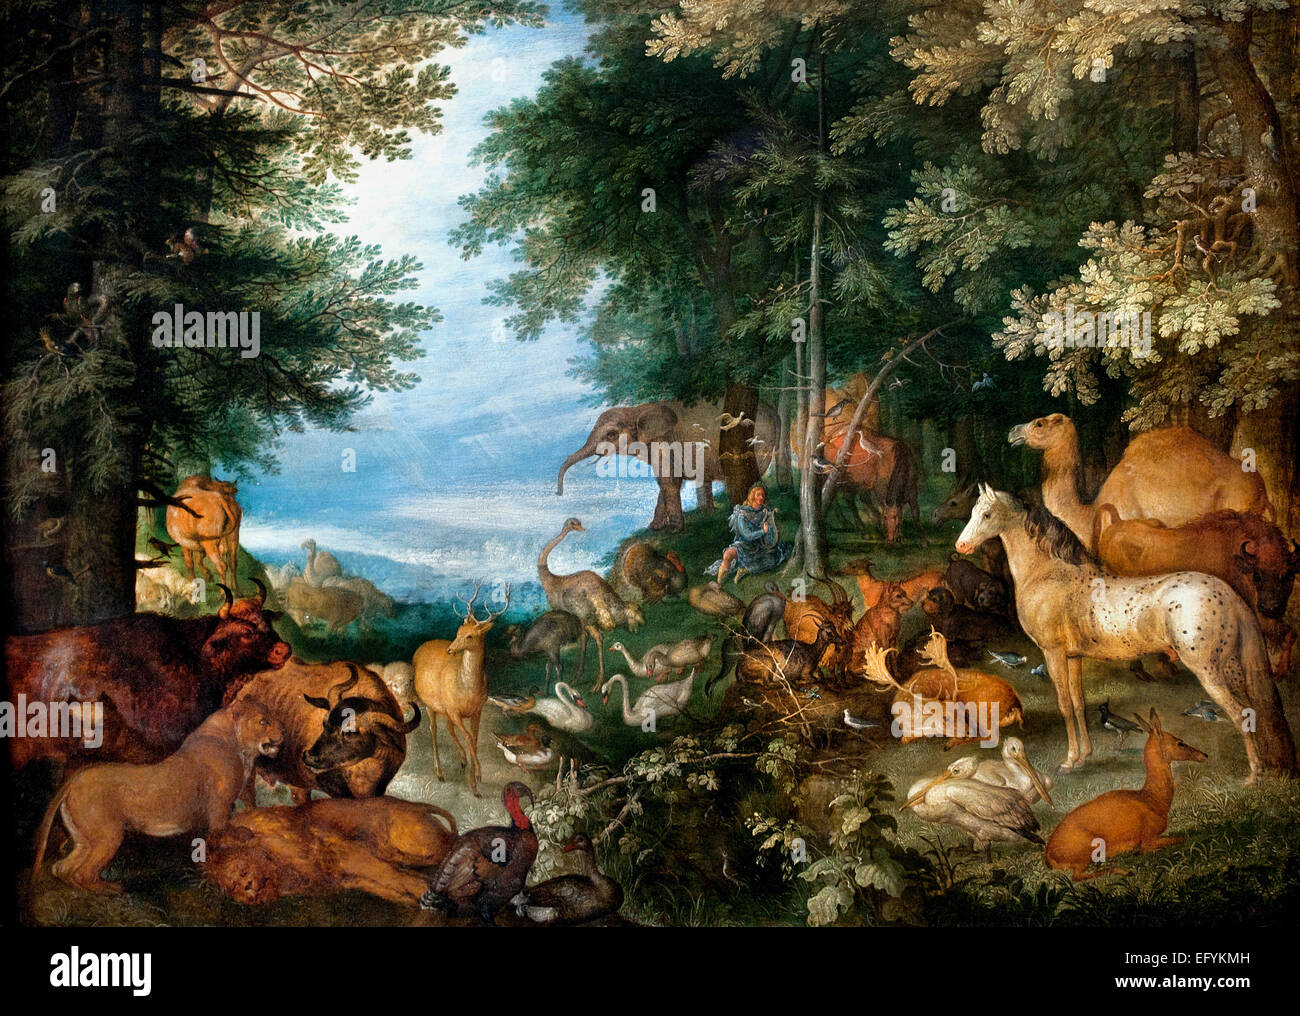 Orphée charmant les animaux avec sa musique 1610 Savery Roelant 1578-1639 Belgique Belge Flamande ( Orphée était un musicien légendaire, poète et prophète de la religion grecque antique et du mythe ) Banque D'Images